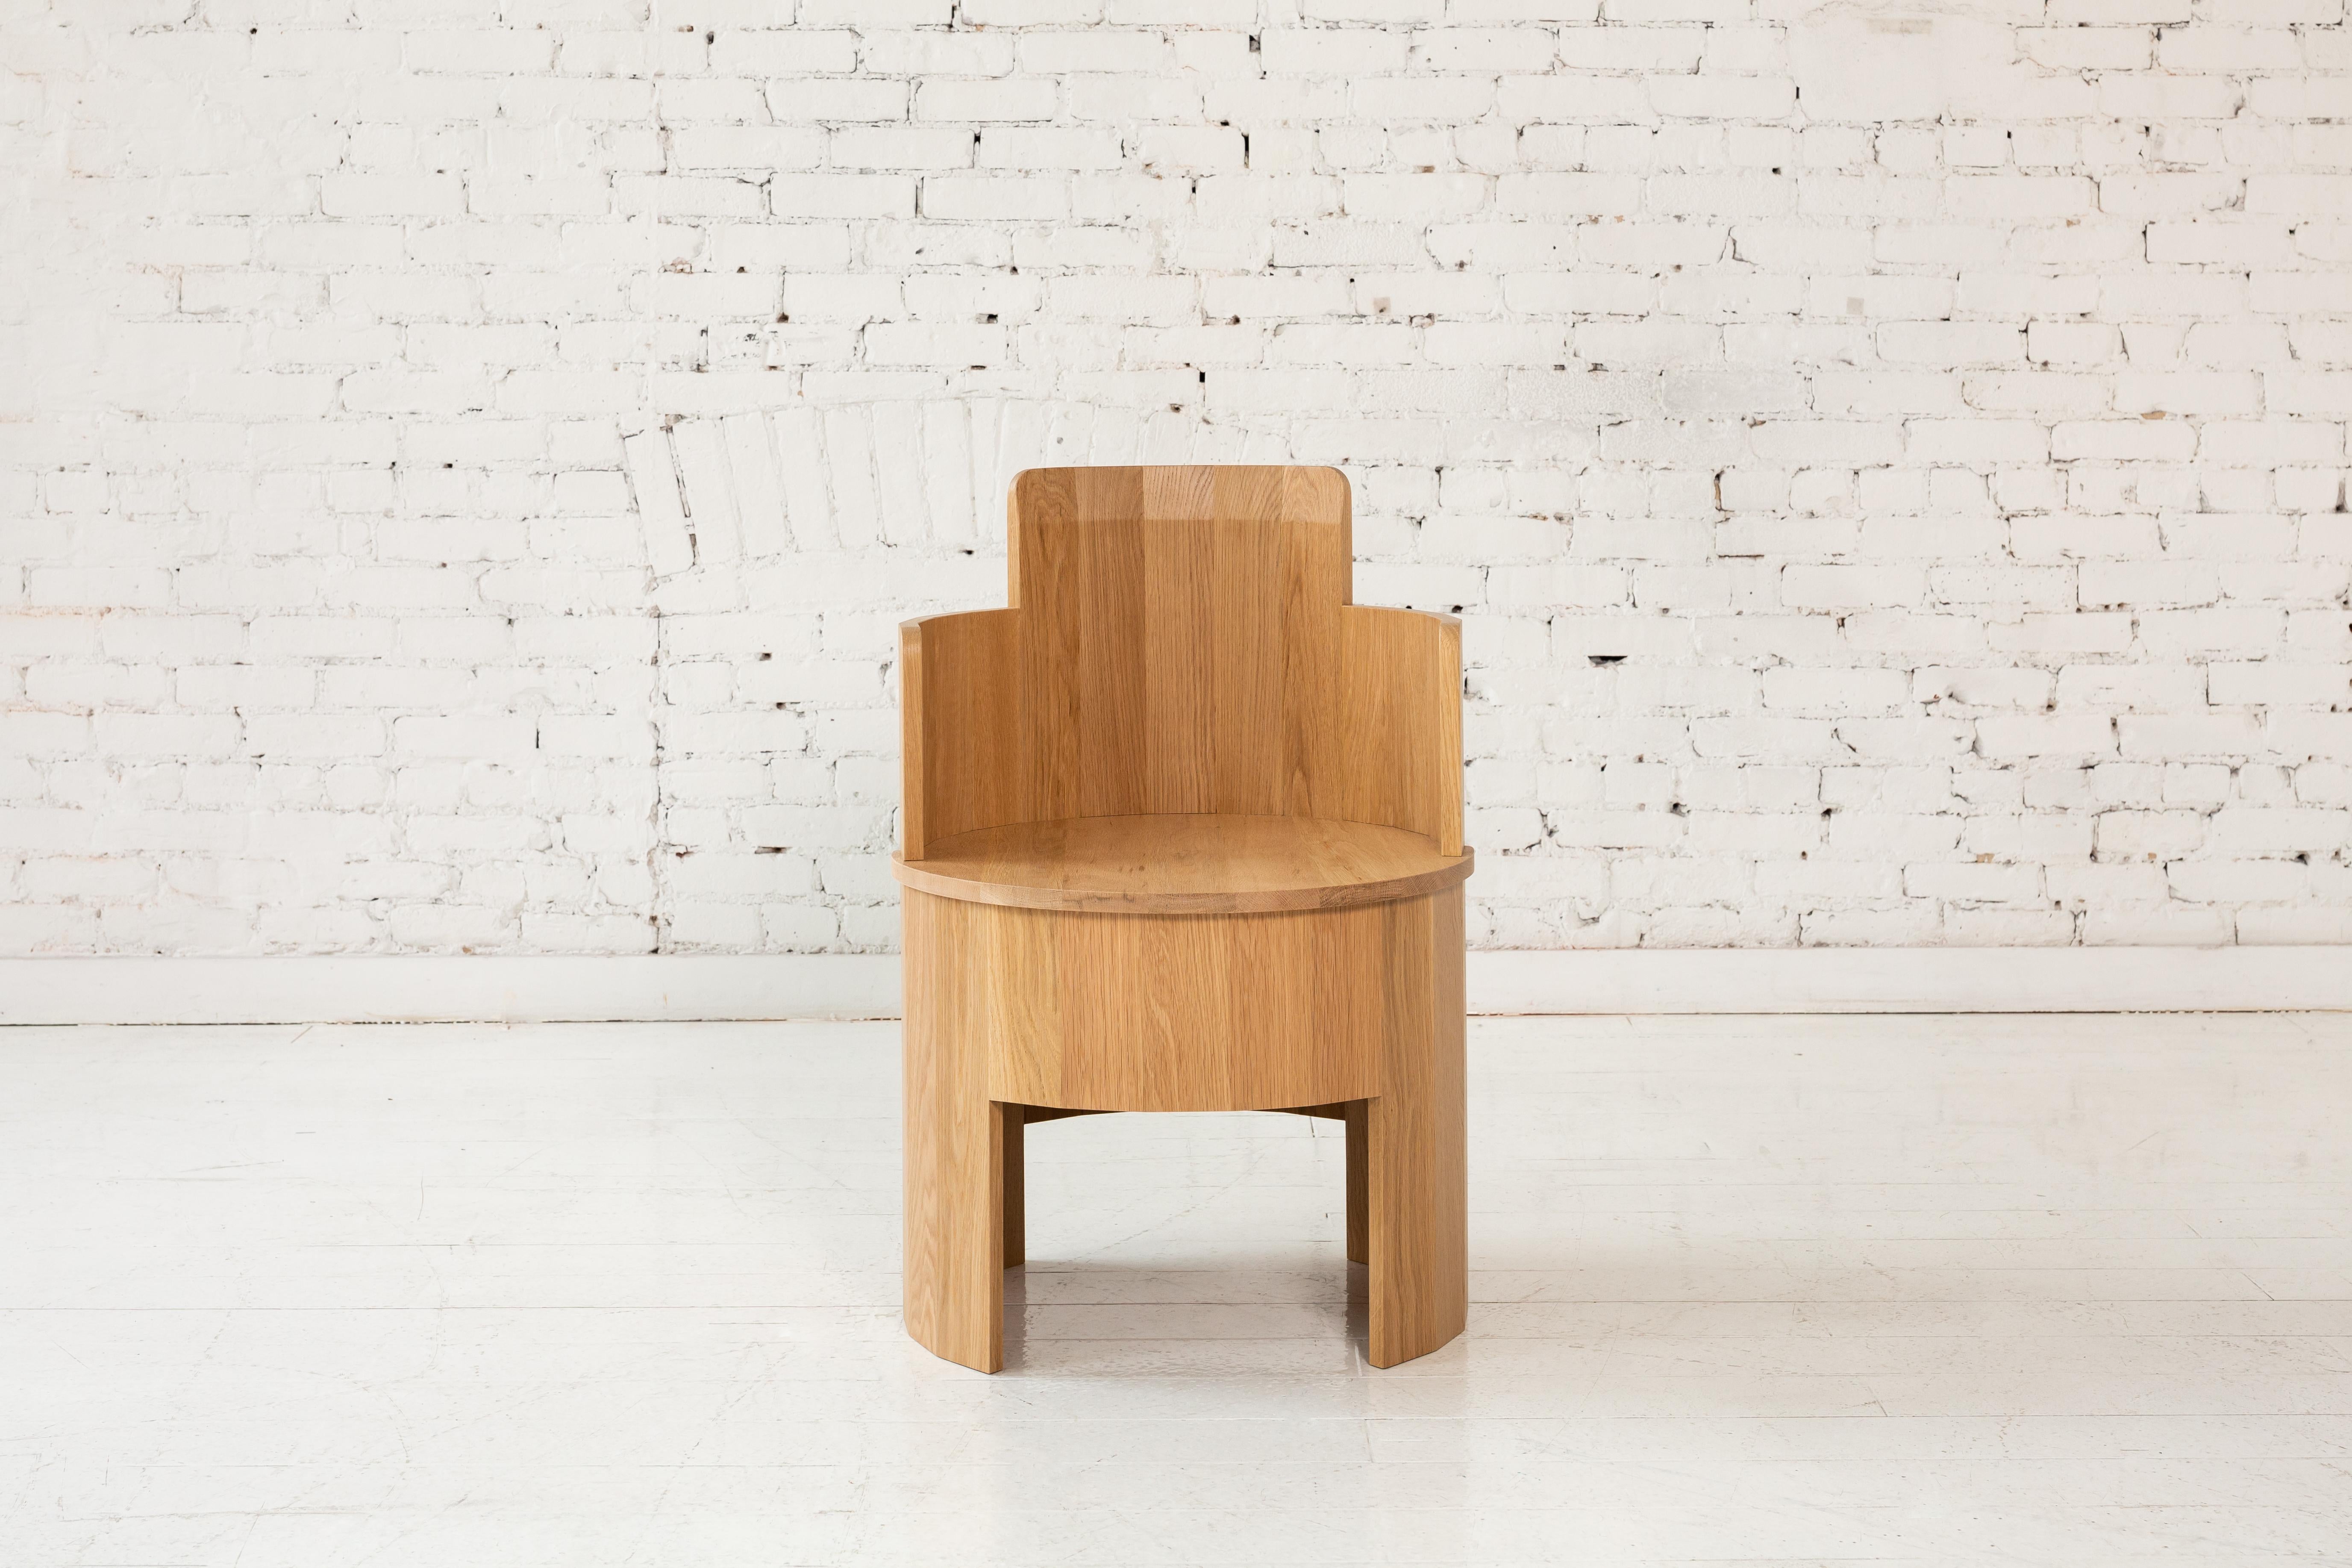 Cette chaise latérale en chêne blanc fait partie de la nouvelle collection Cooperage Dining. Chaque pièce comporte de grands éléments ronds à facettes qui, avec son homonyme, font référence au métier de tonnelier traditionnel de la fabrication des